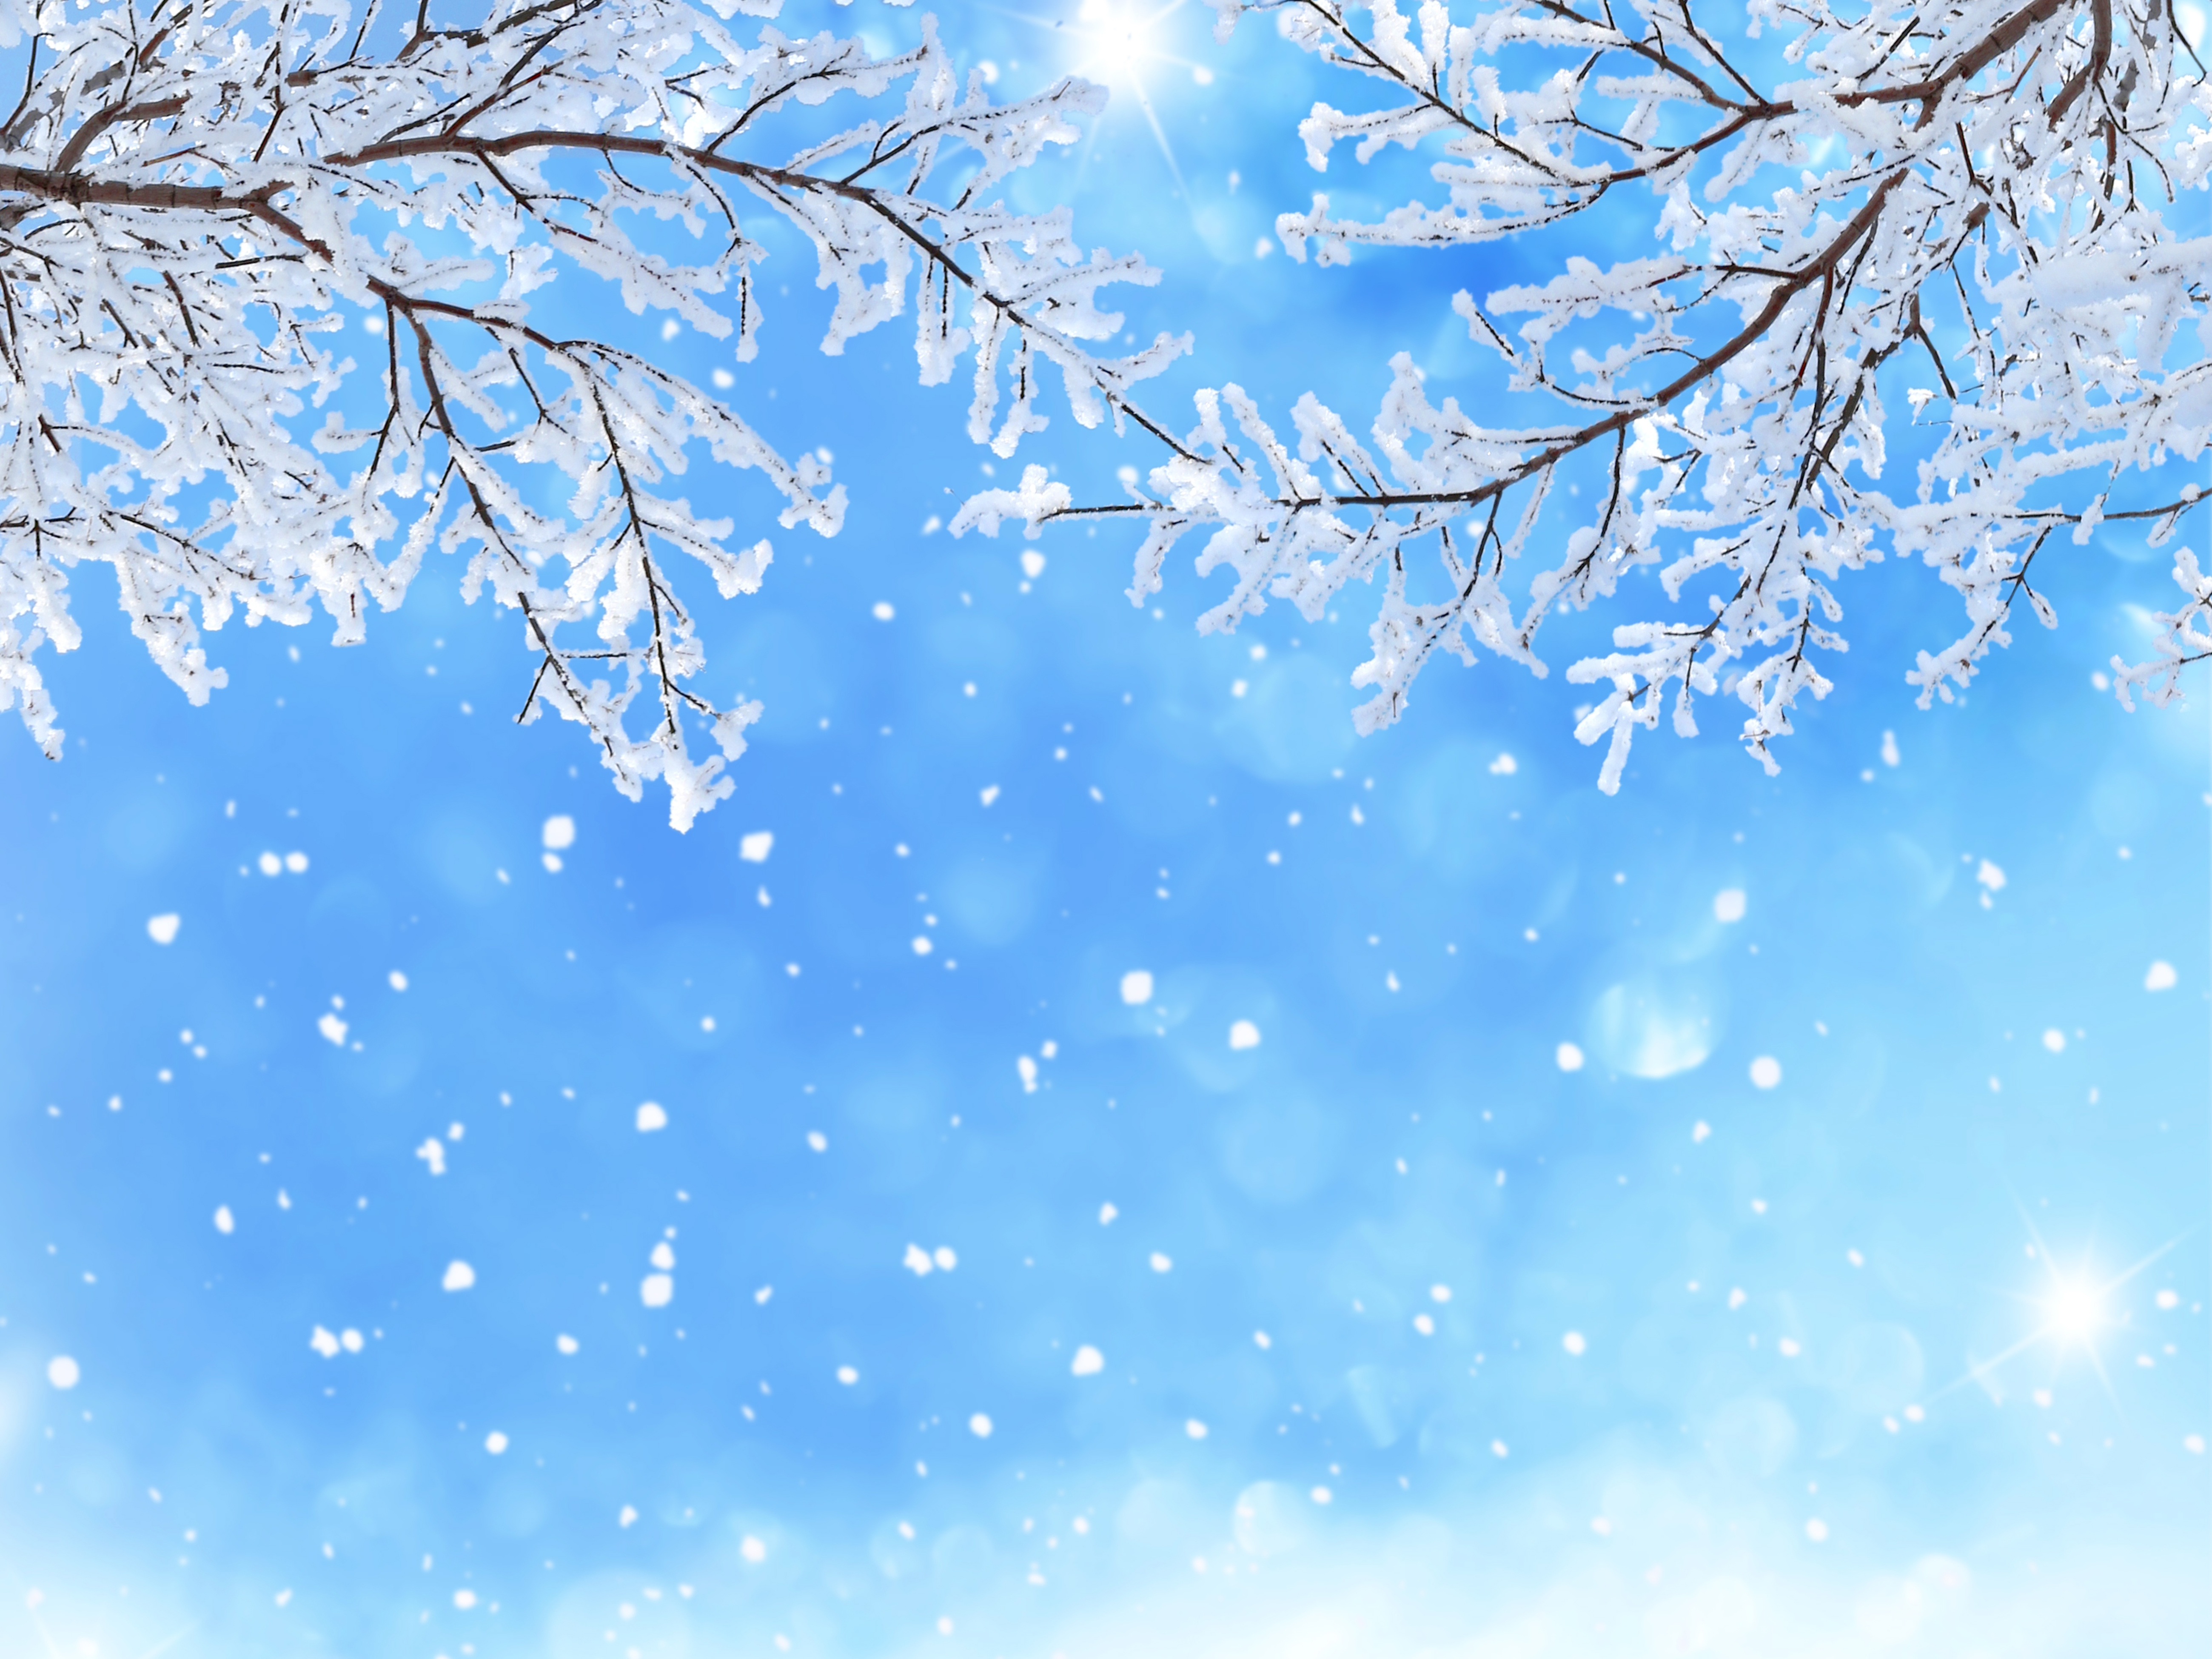 Скачать обои бесплатно Зима, Снег, Снежинки, Ветка, Снегопад, Земля/природа картинка на рабочий стол ПК